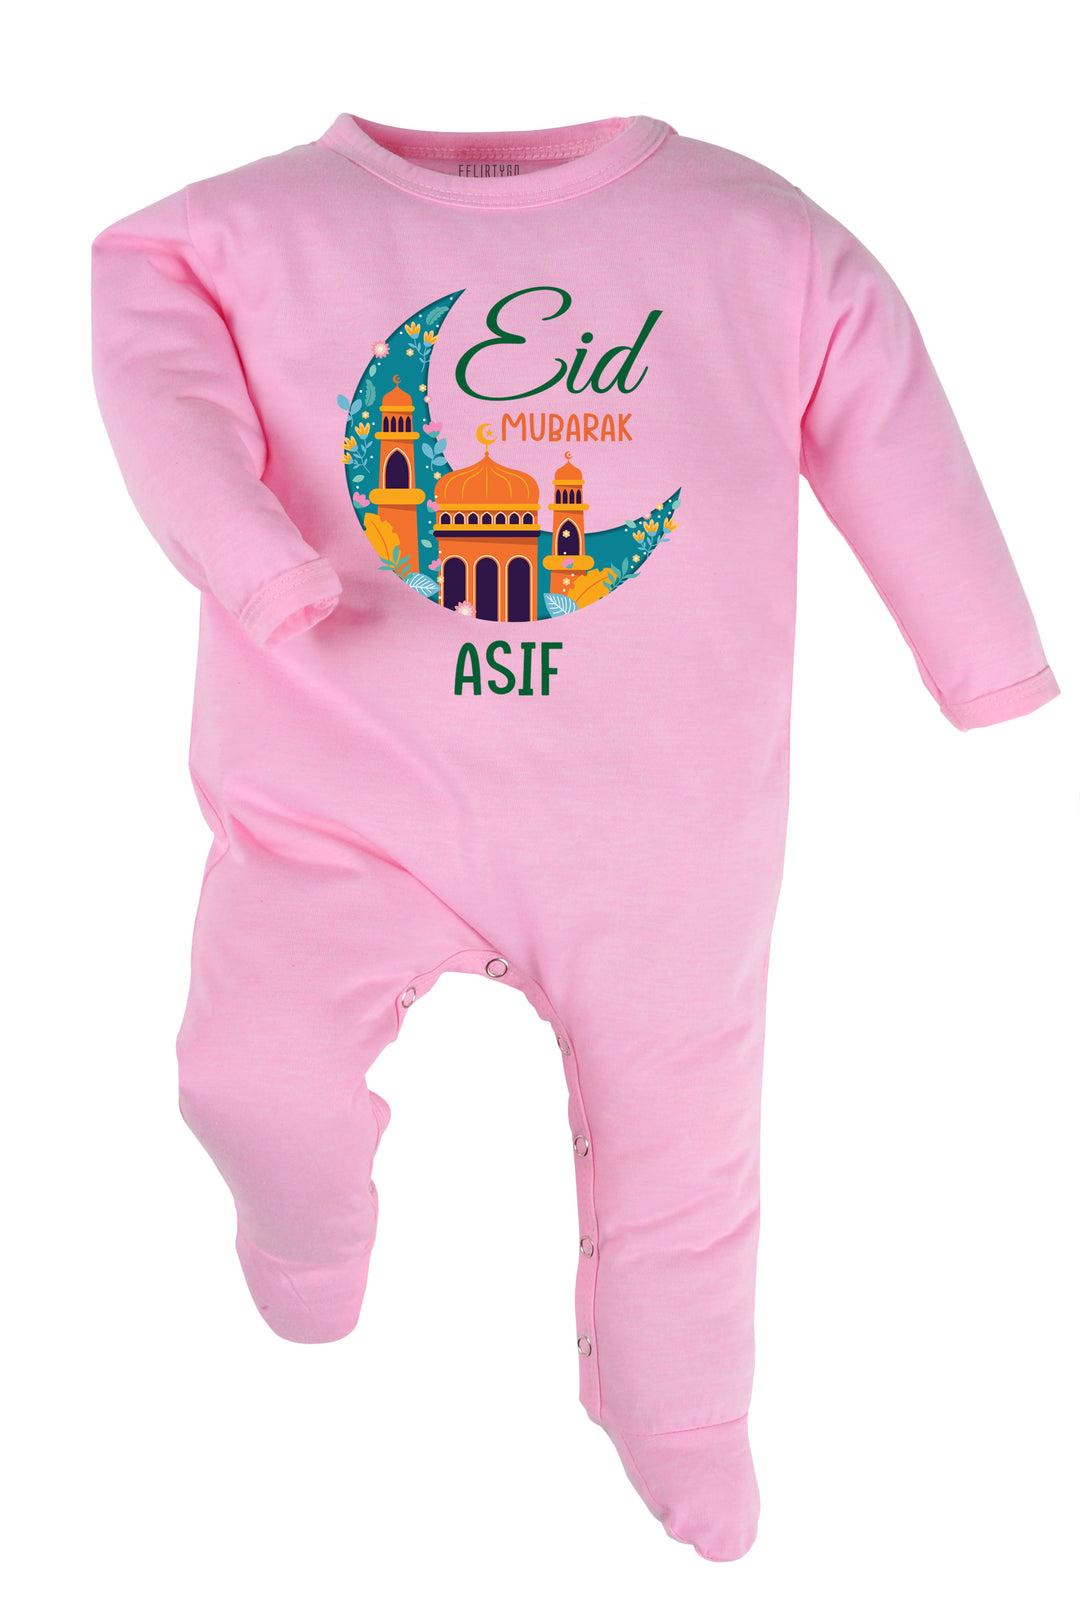 Eid Mubarak Baby Romper | Onesies w/ Custom Name